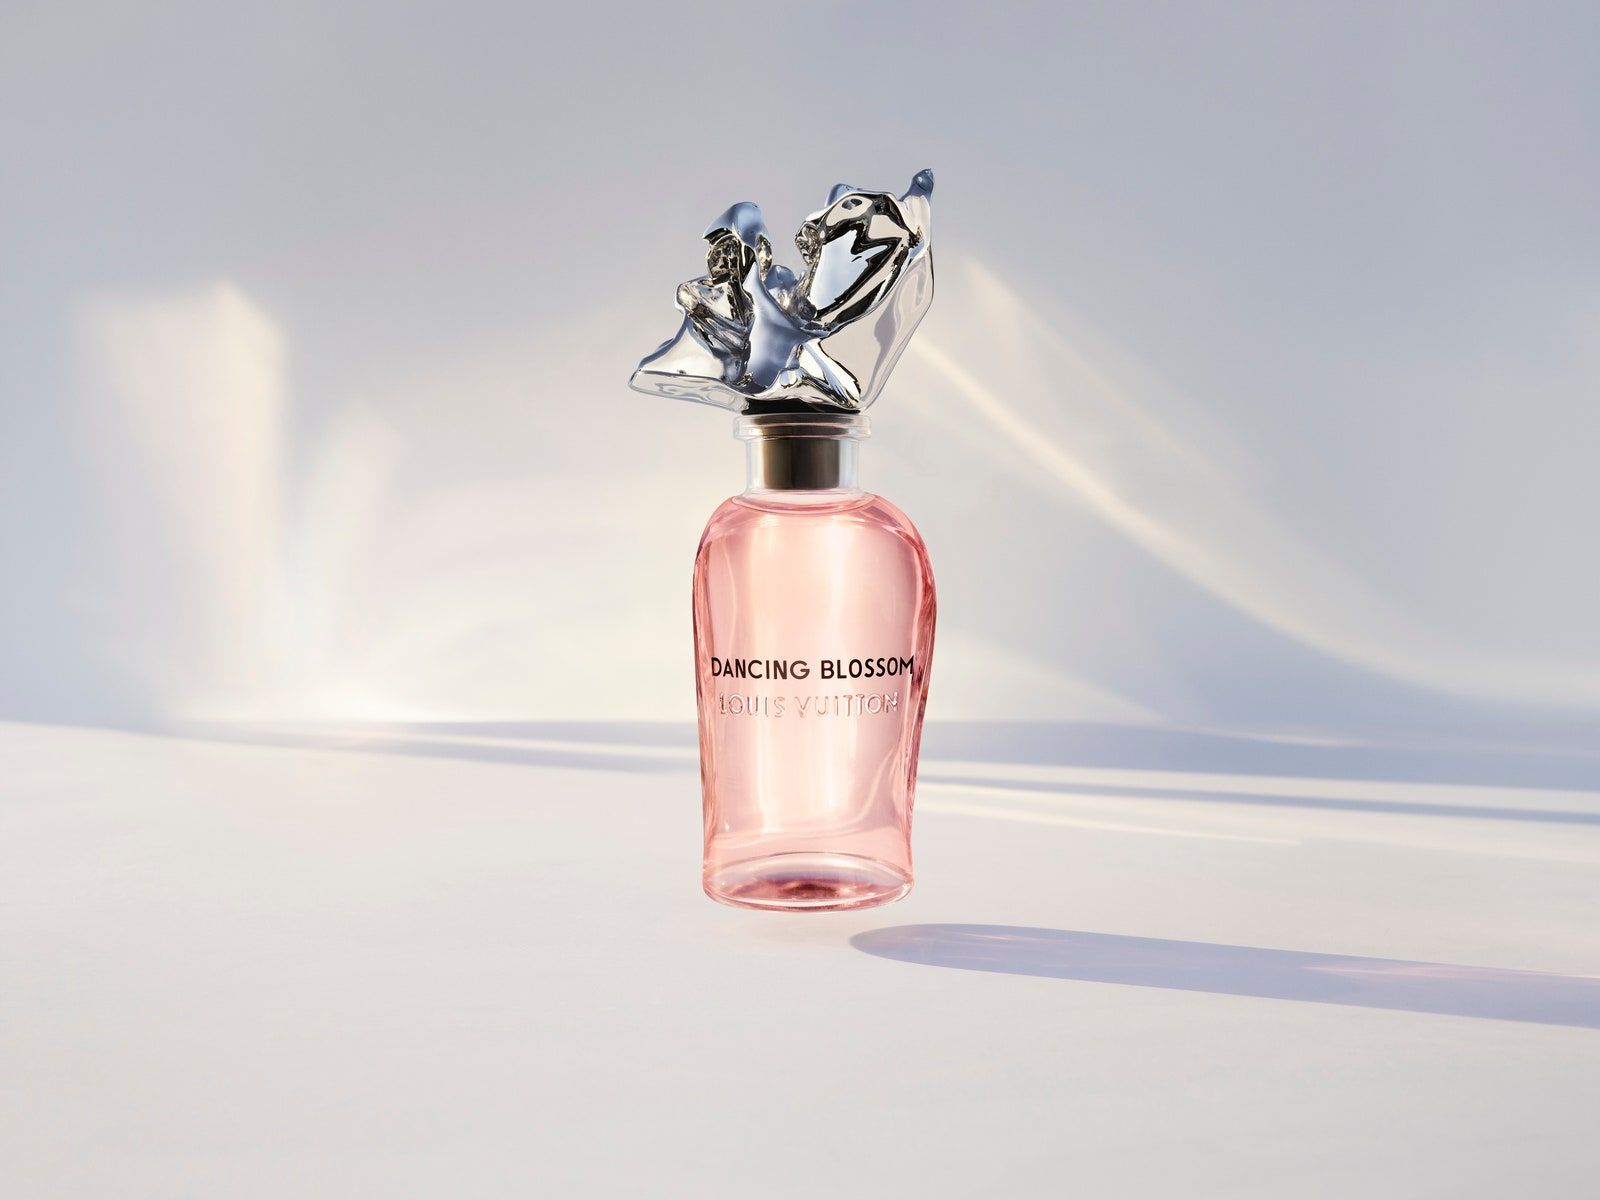 Les Sables Roses by Louis Vuitton Eau de Parfum Vial 0.06oz Spray New with Box